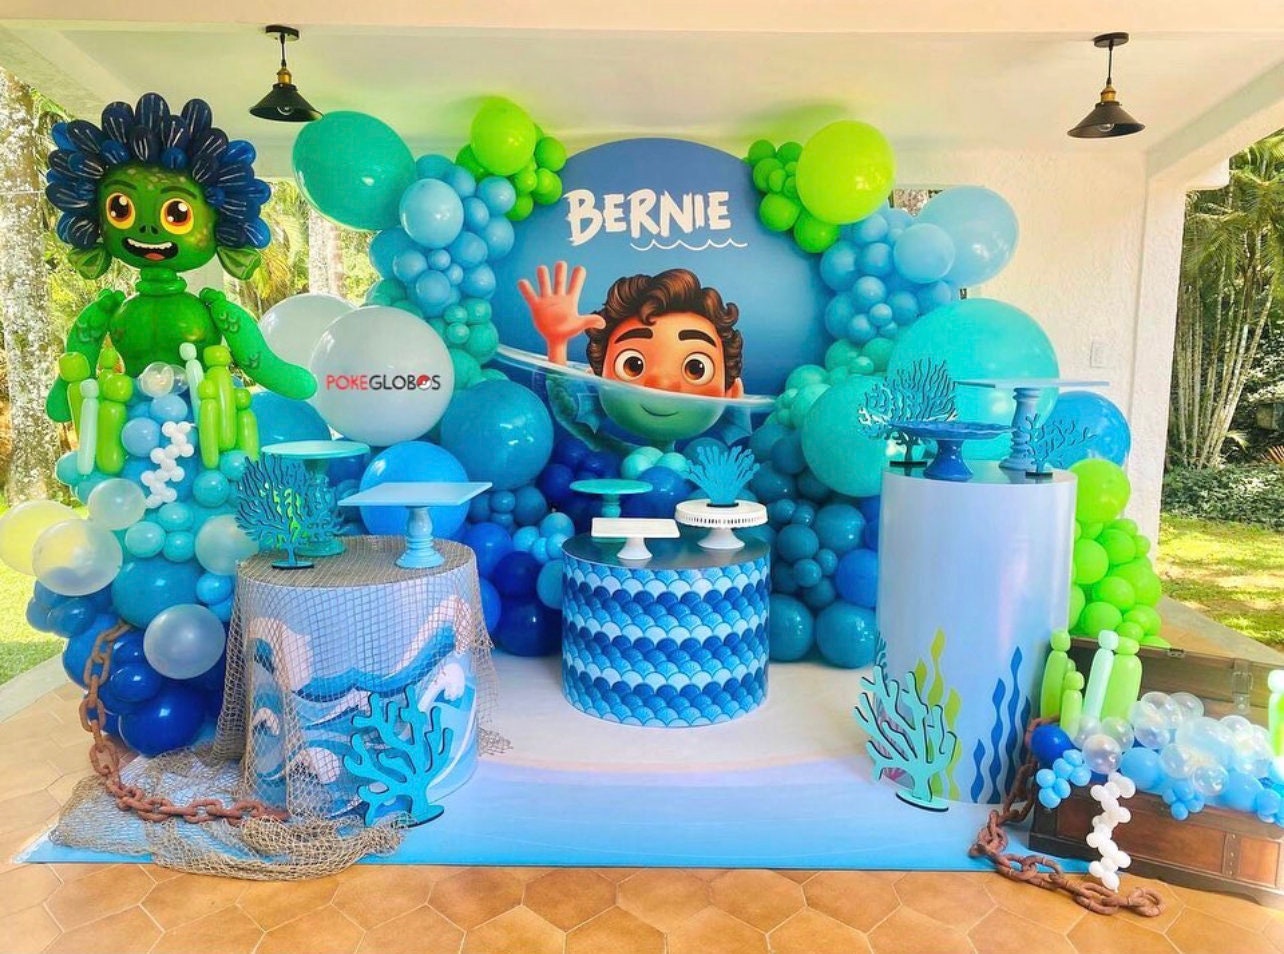 decoración con globos azules sobre la torta  Birthday party decorations,  Balloon decorations party, Birthday decorations